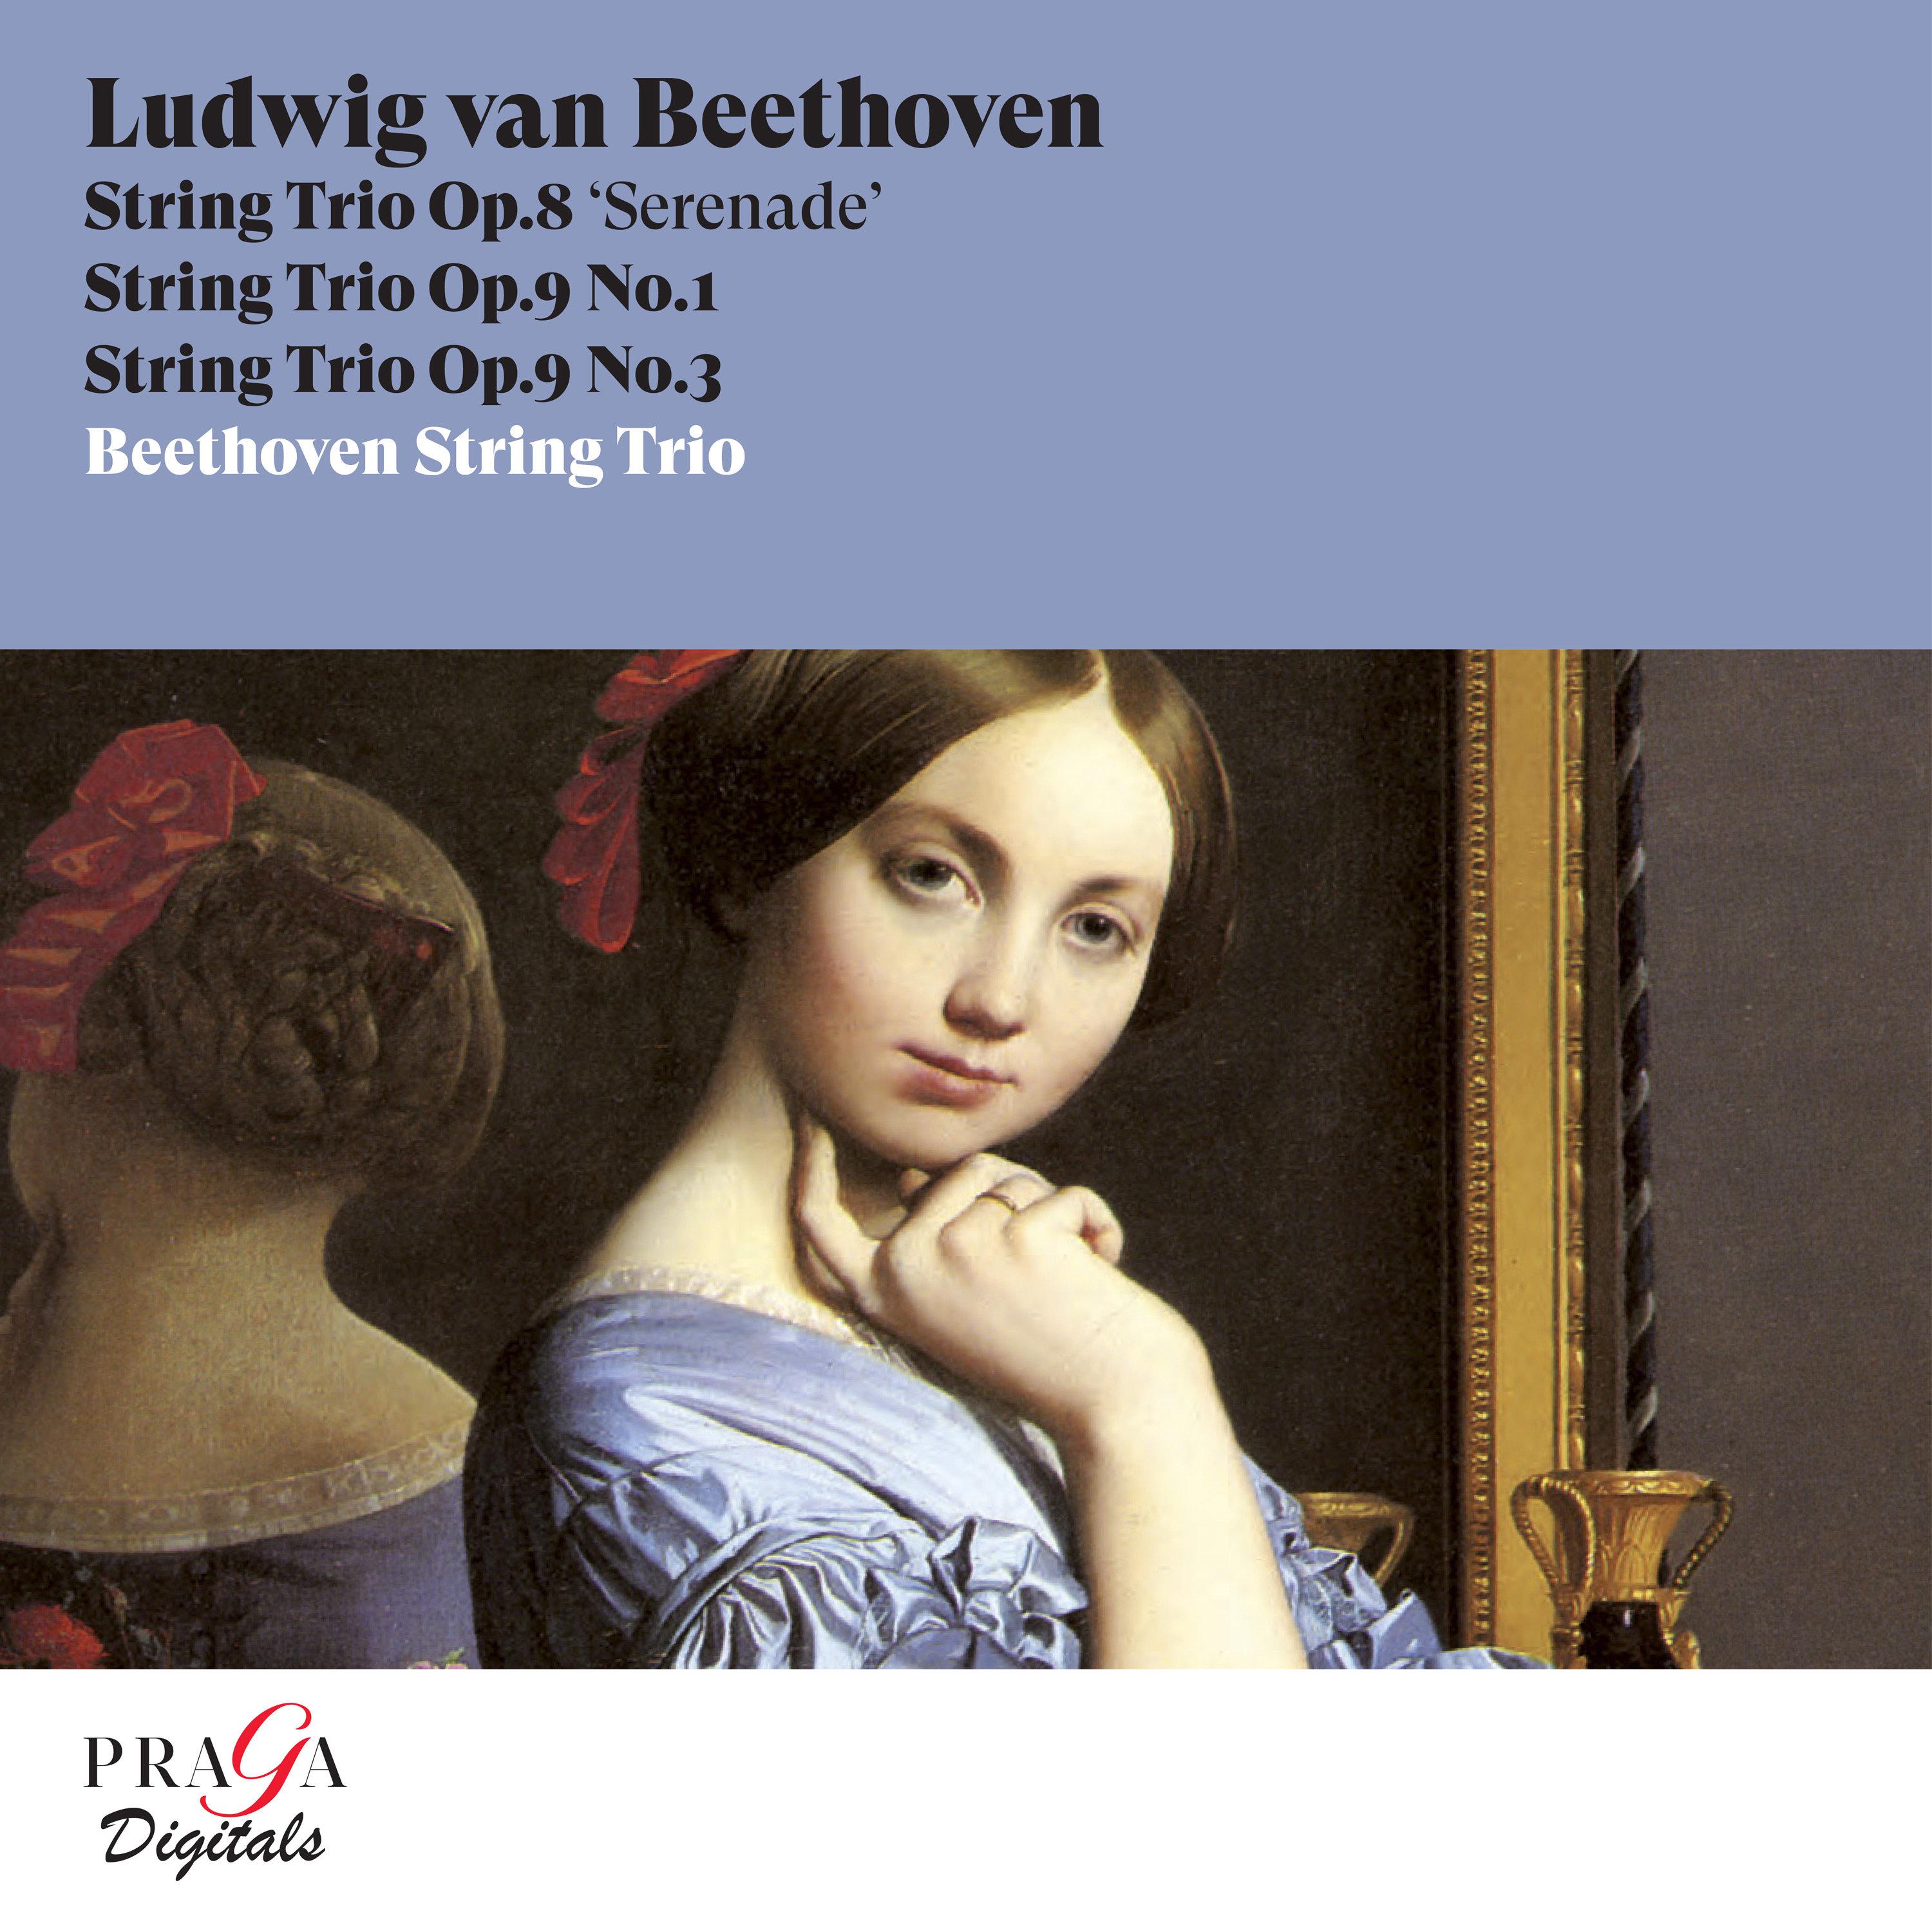 Beethoven String Trio - String Trio No. 2 in D Major, Op. 8 